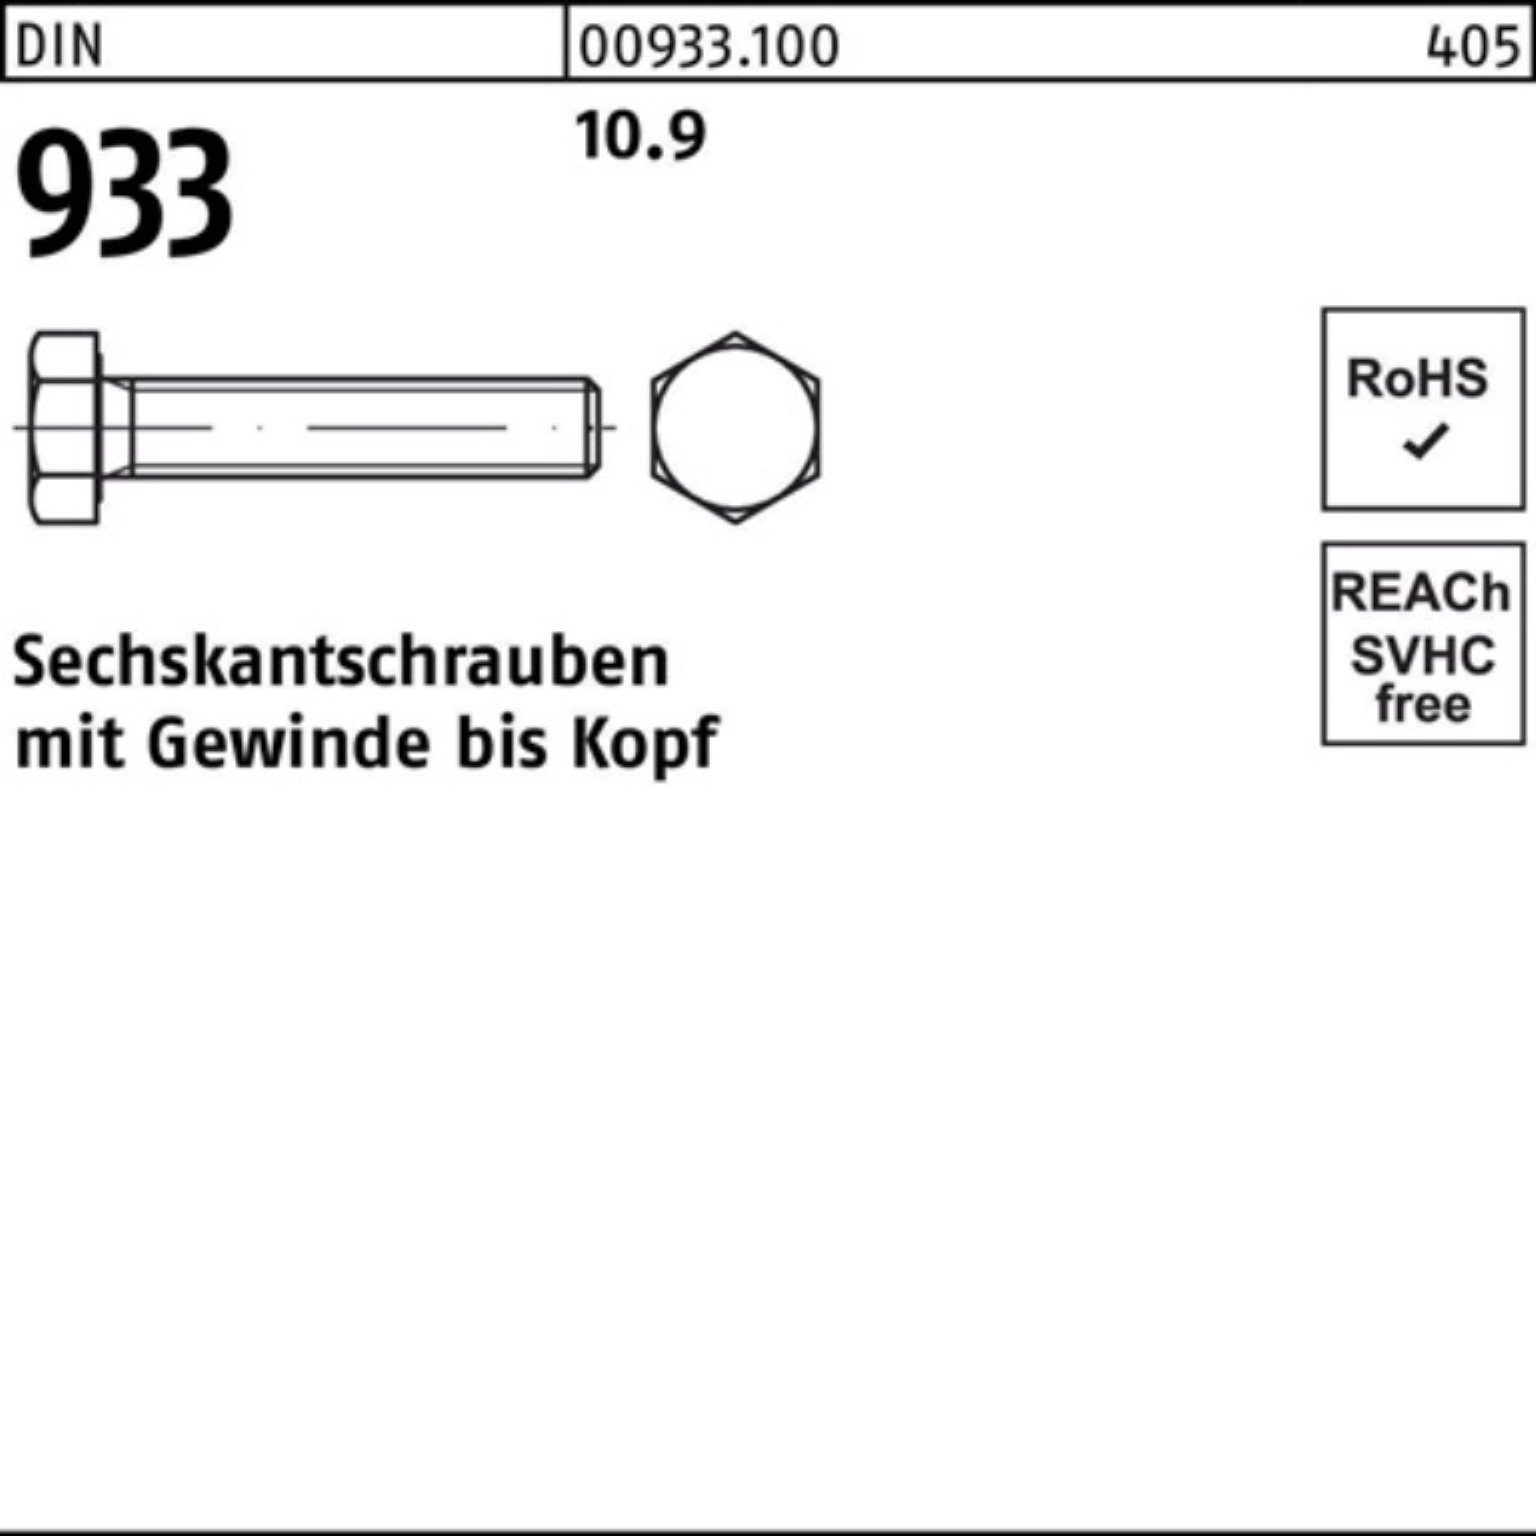 933 1 Reyher Stück Sechskantschraube M33x Sechskantschraube 933 100er Pack VG 160 DIN DIN 10.9